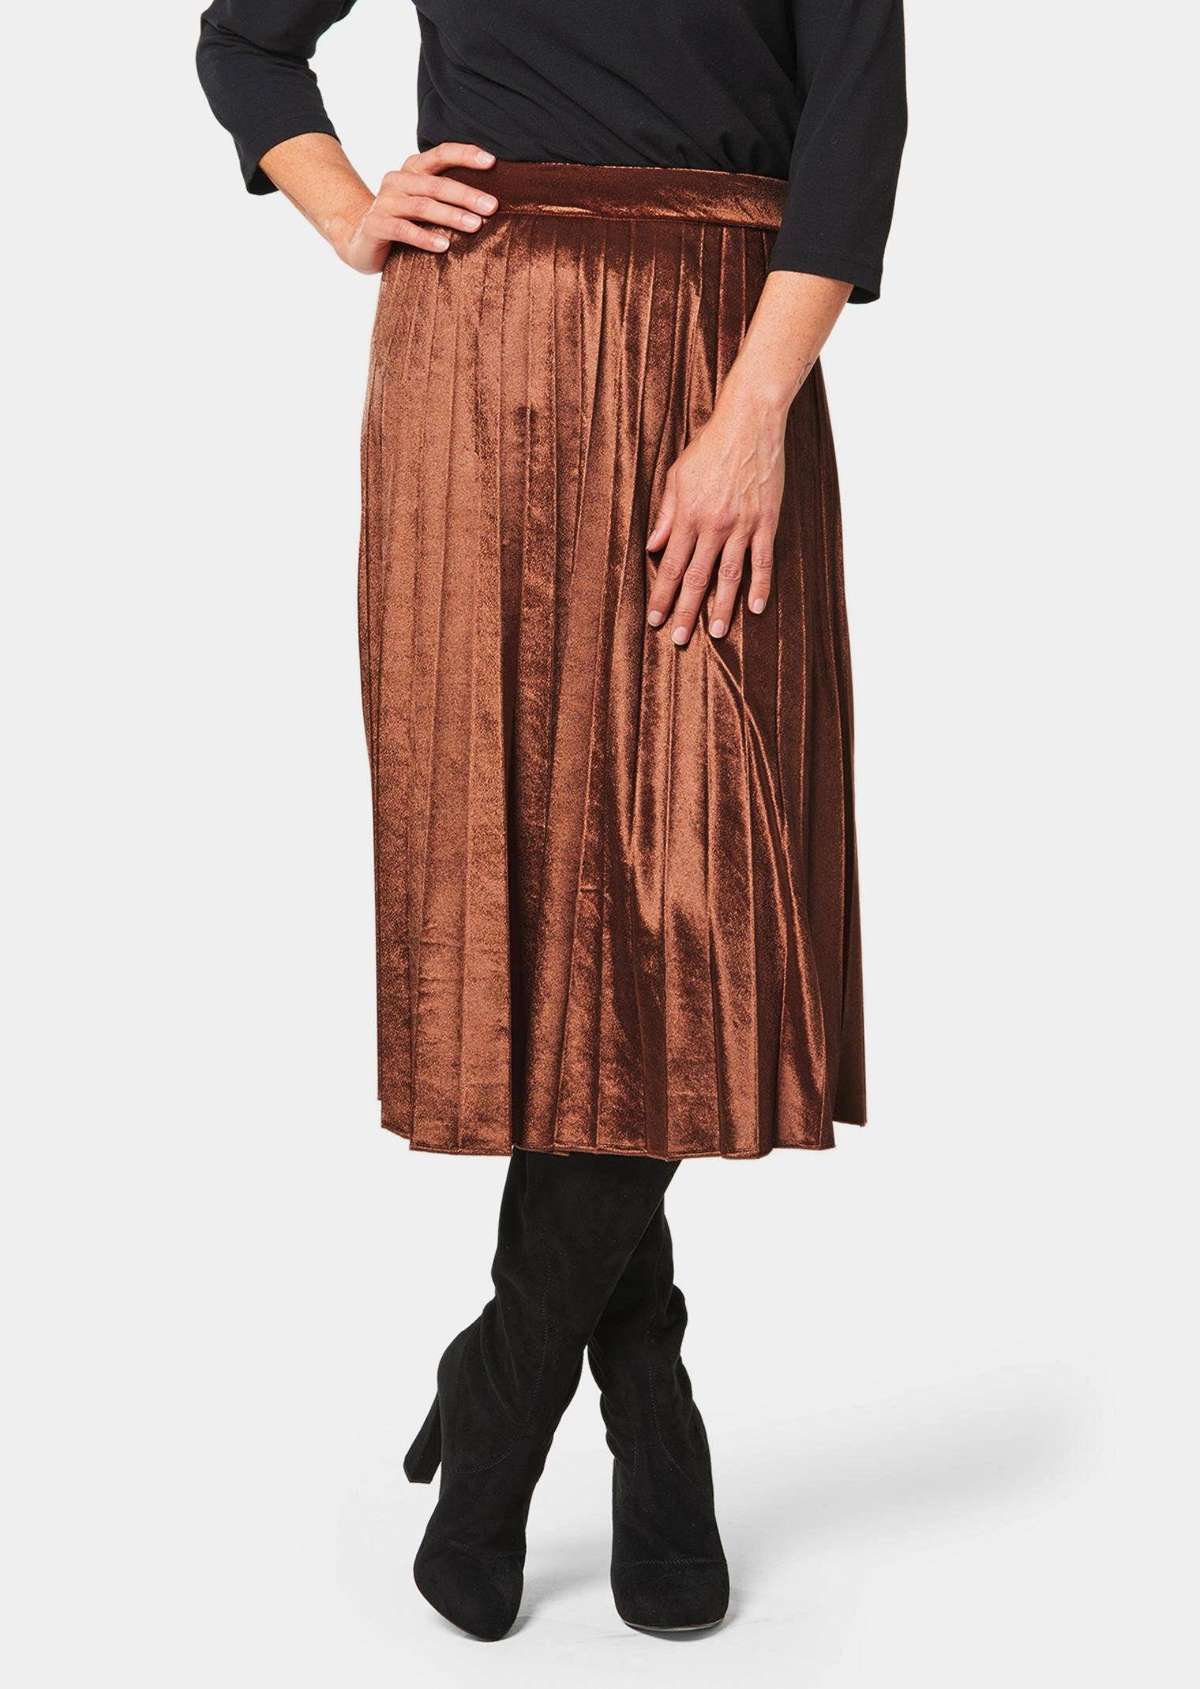 Плиссированная юбка-комбинация из мерцающего бархата.